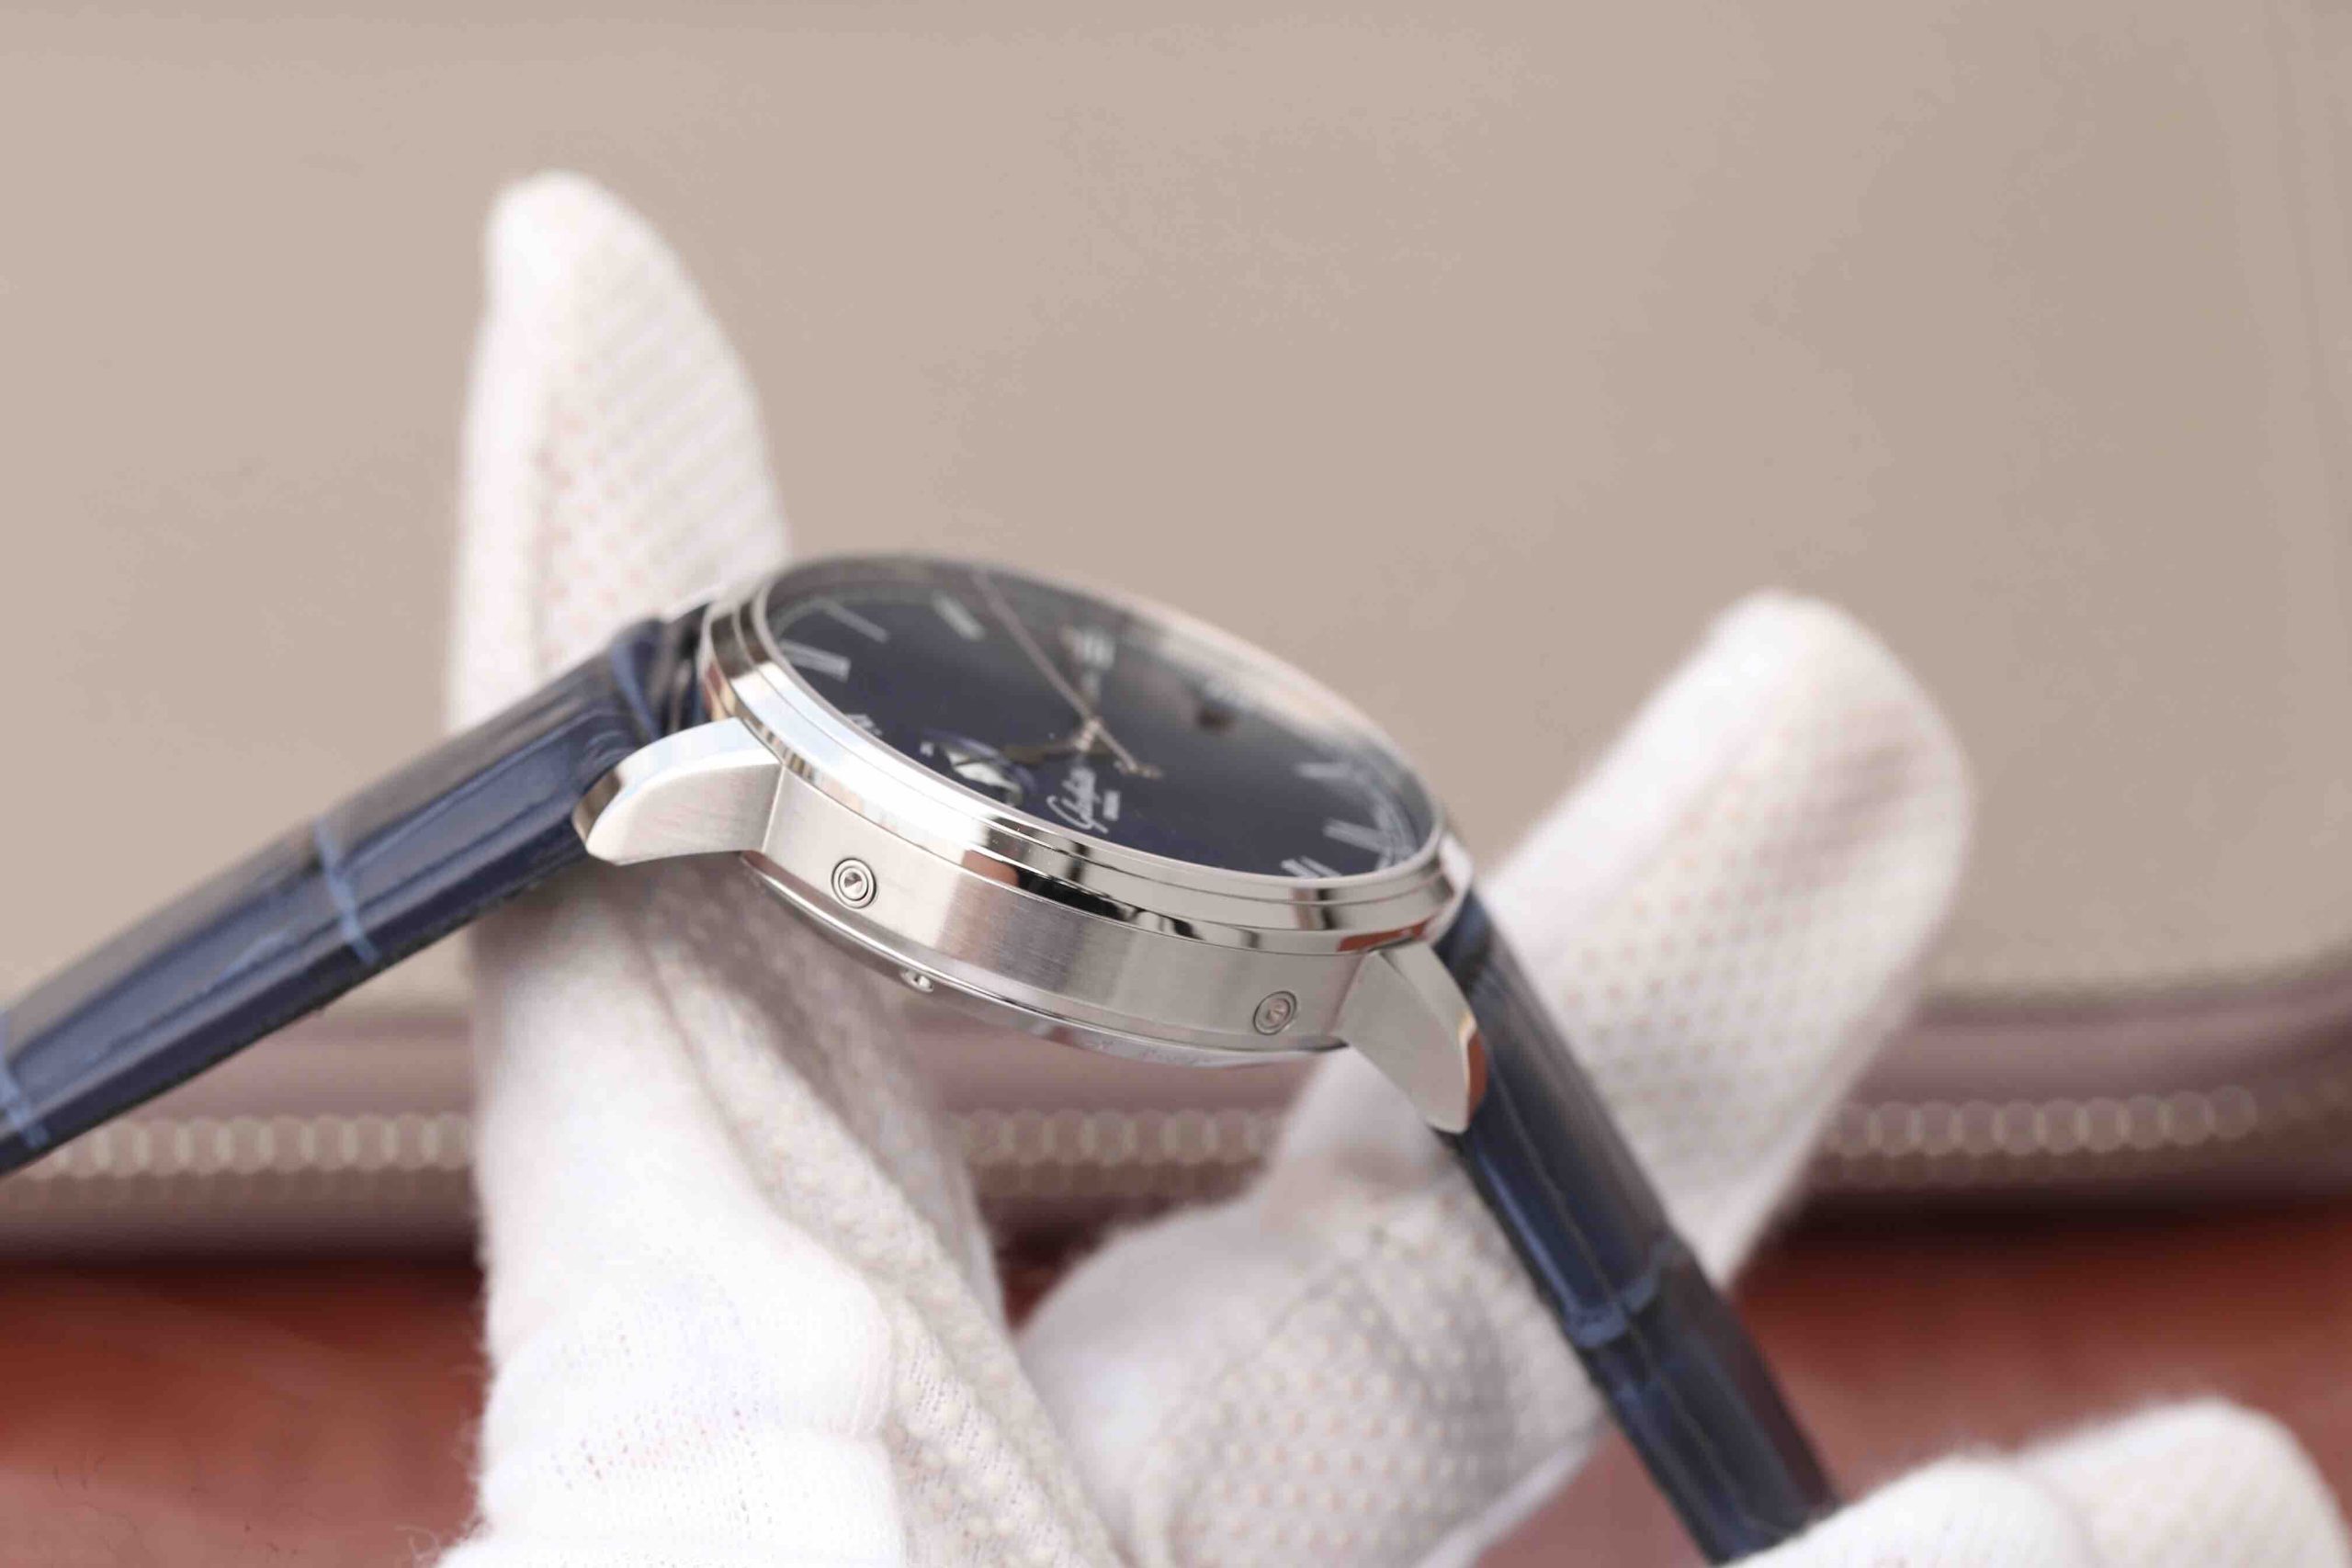 2023033103502465 scaled - 復刻手錶格拉蘇蒂手錶價格及圖片 GF格拉蘇蒂原創議員大日歴月相100-04-32-12-04￥2780